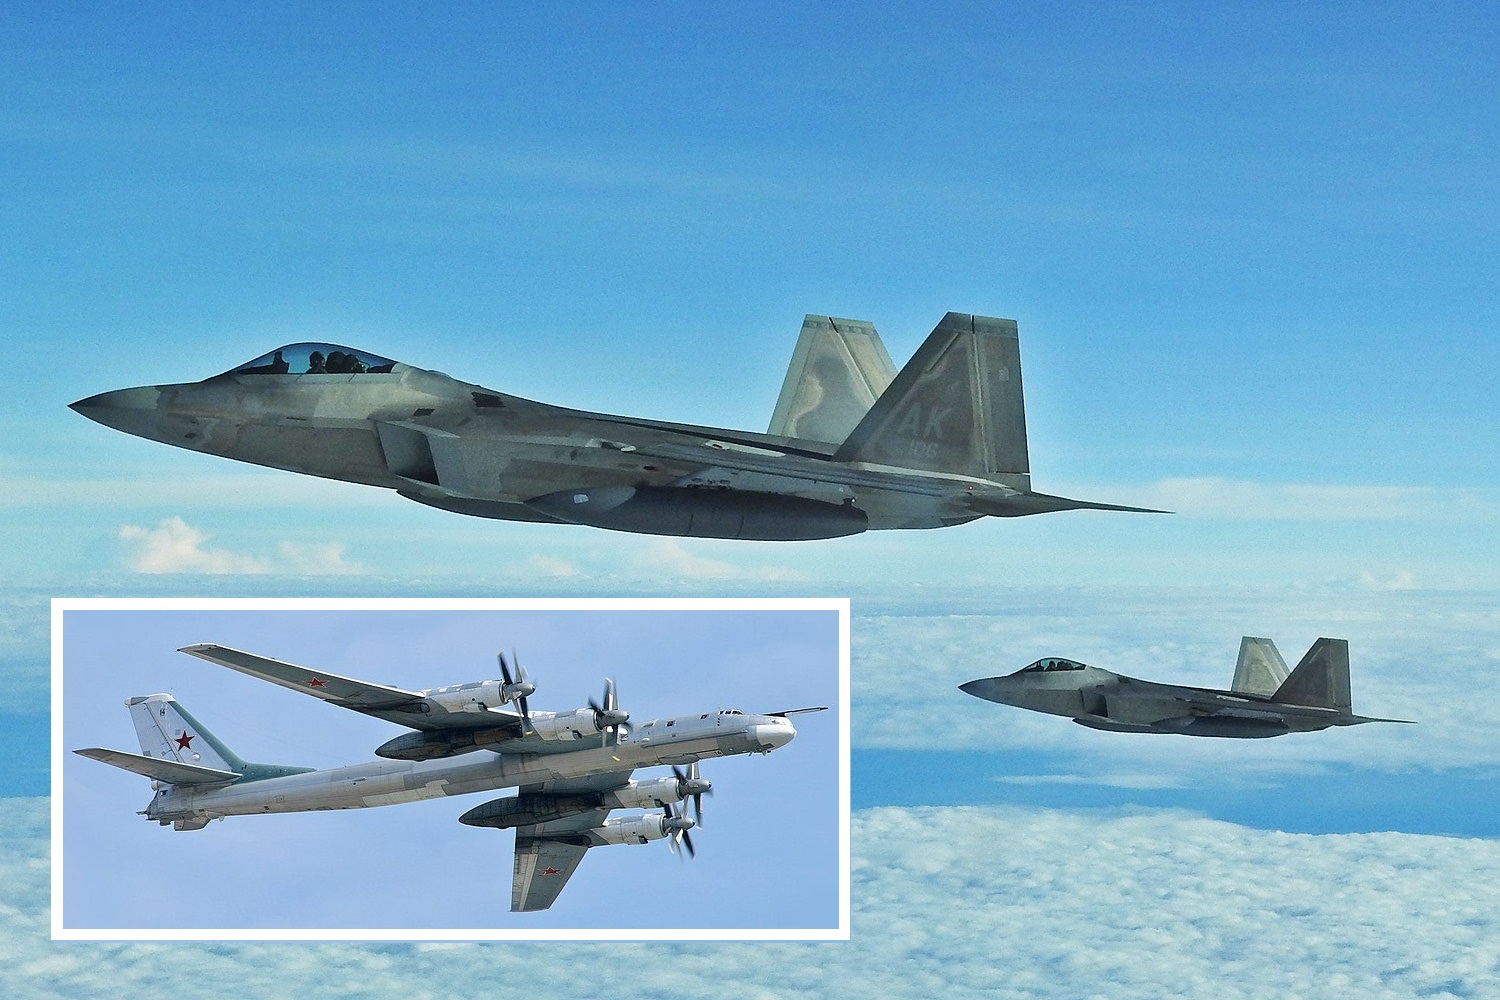 F-22-Kampfflugzeuge der fünften Generation fangen zwei russische Tu-95-Atombomber bei Alaska ab